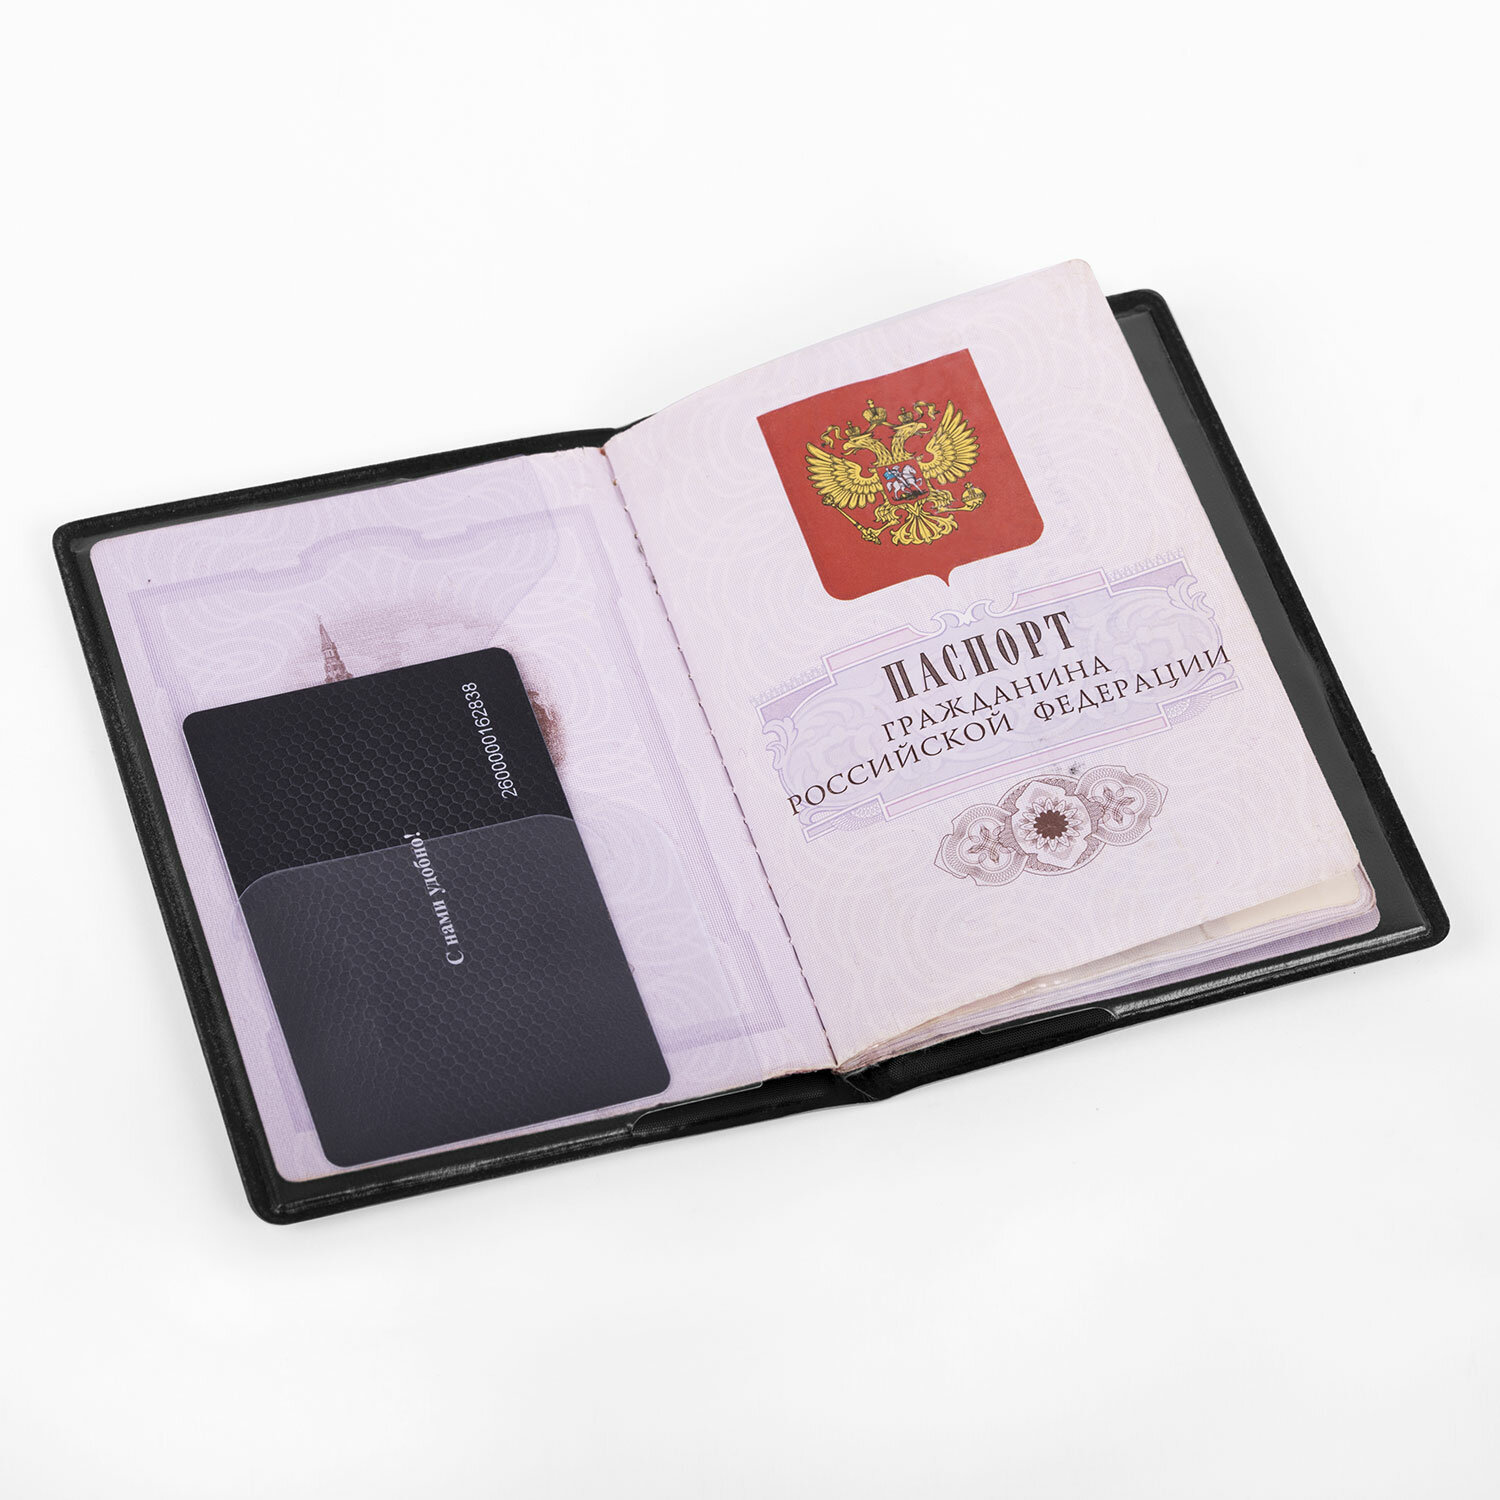 Обложка на паспорт Staff чехол - фото 6